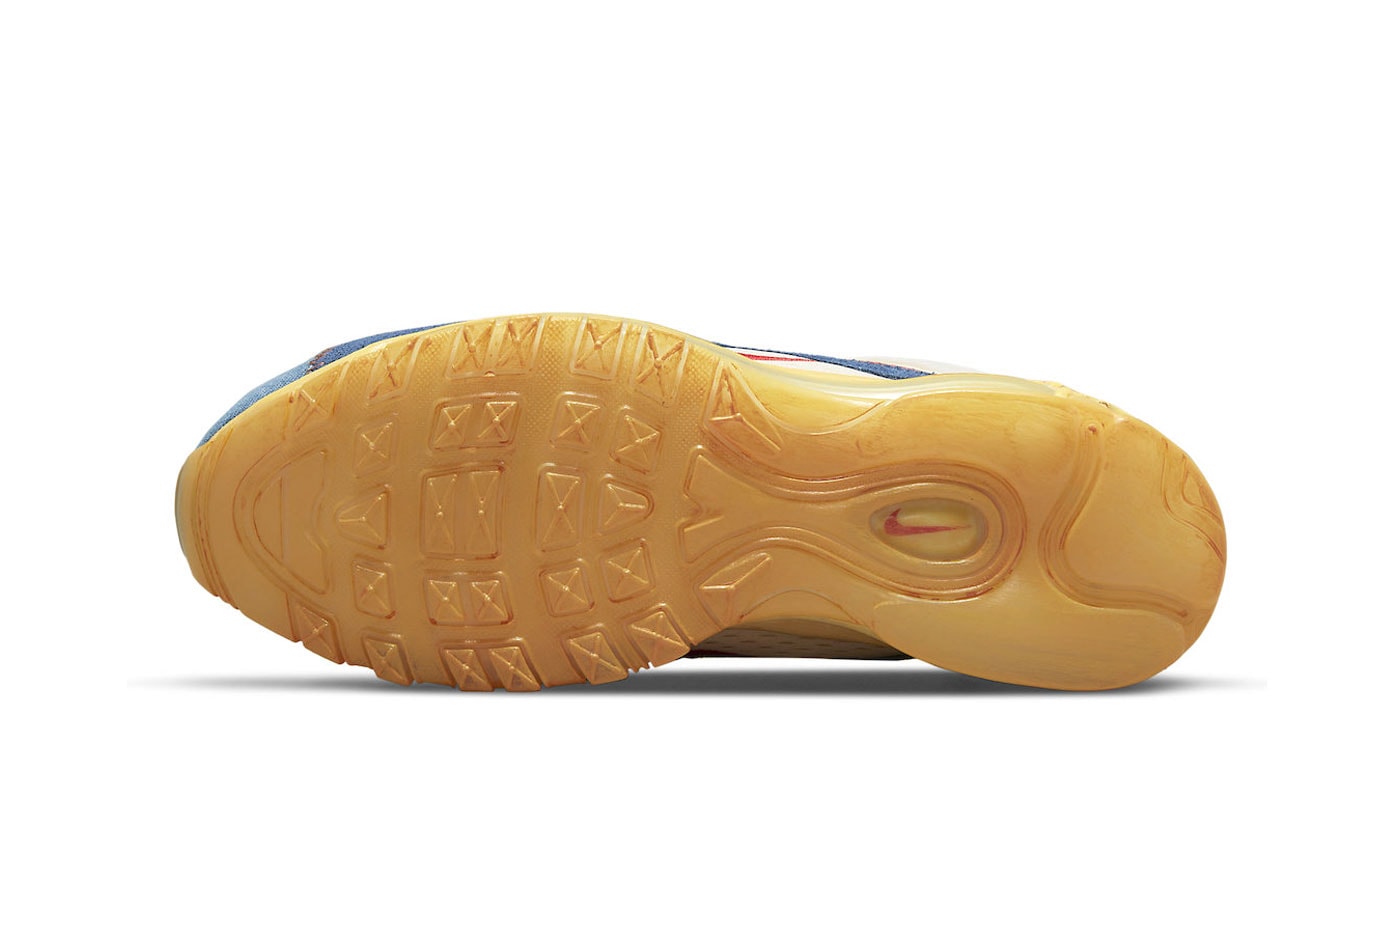 ナイキからヴィンテージライクなカラーを纏ったエア マックス 97の新作が登場 Nike Air Max 97 Coconut Milk Fossil Official Look Release Info dv1486-162 Date Buy Price 